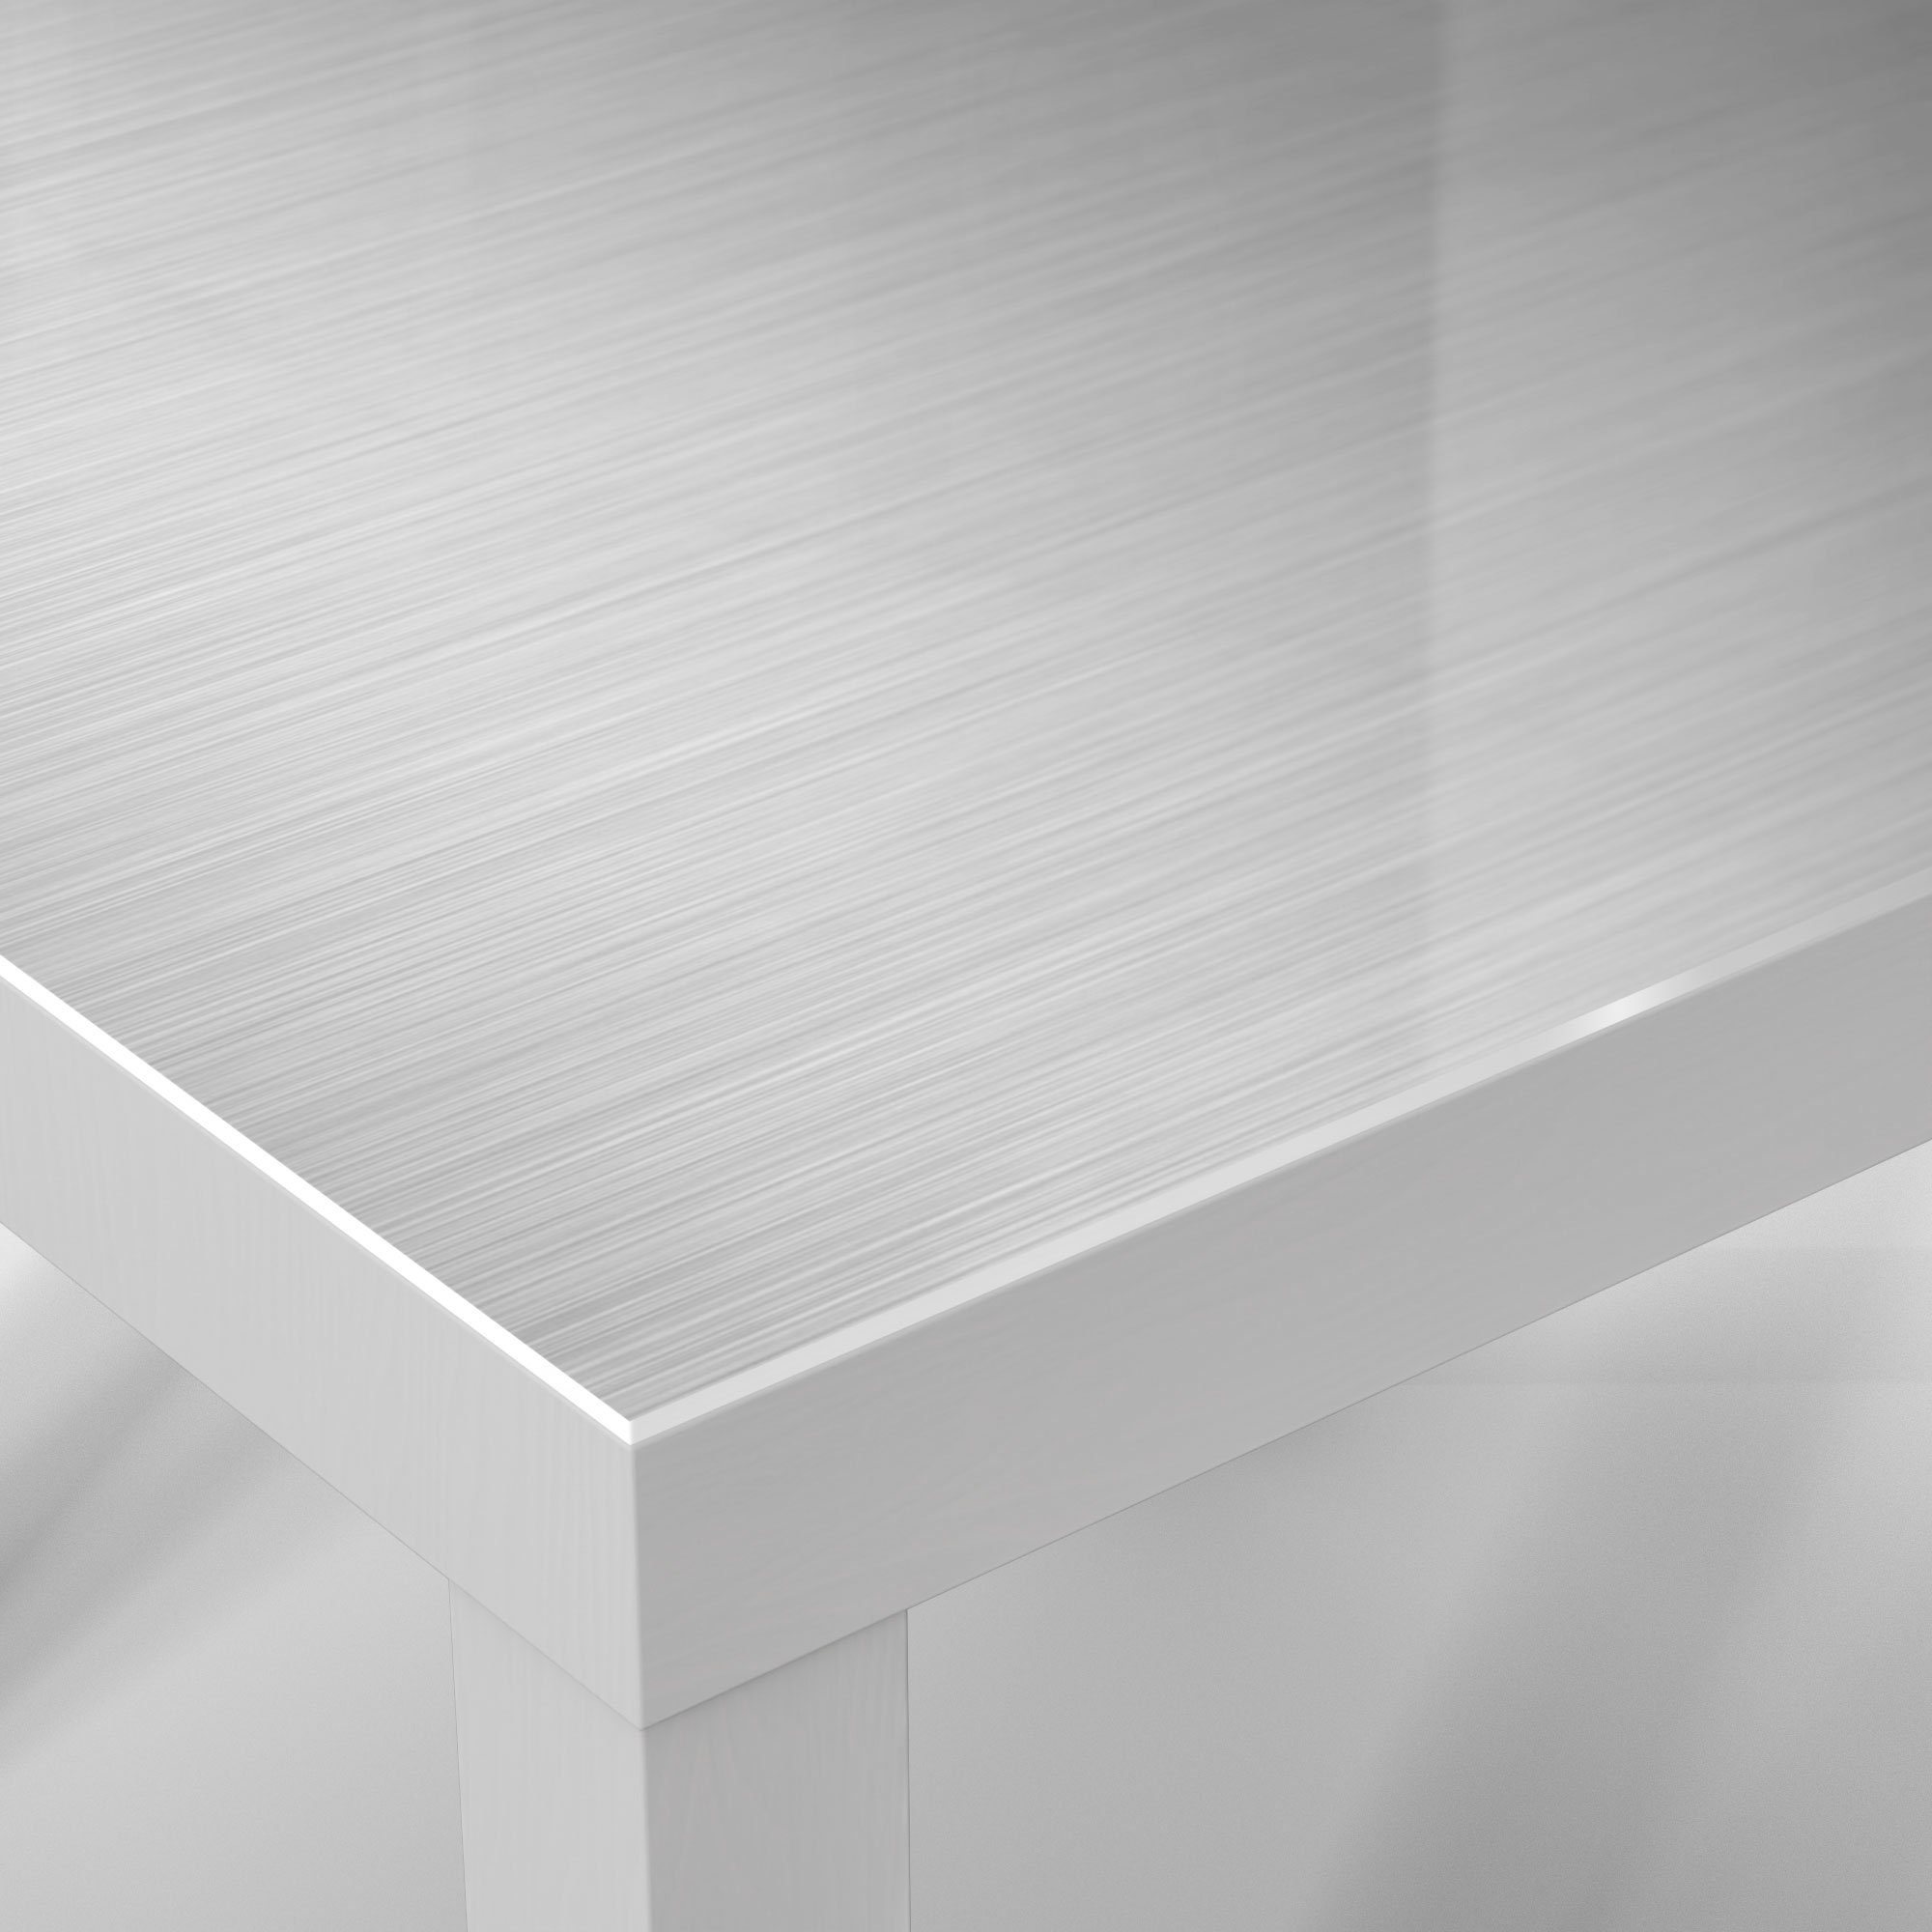 Aluminium', 'Gebürstetes Beistelltisch Glas Weiß Couchtisch DEQORI modern Glastisch